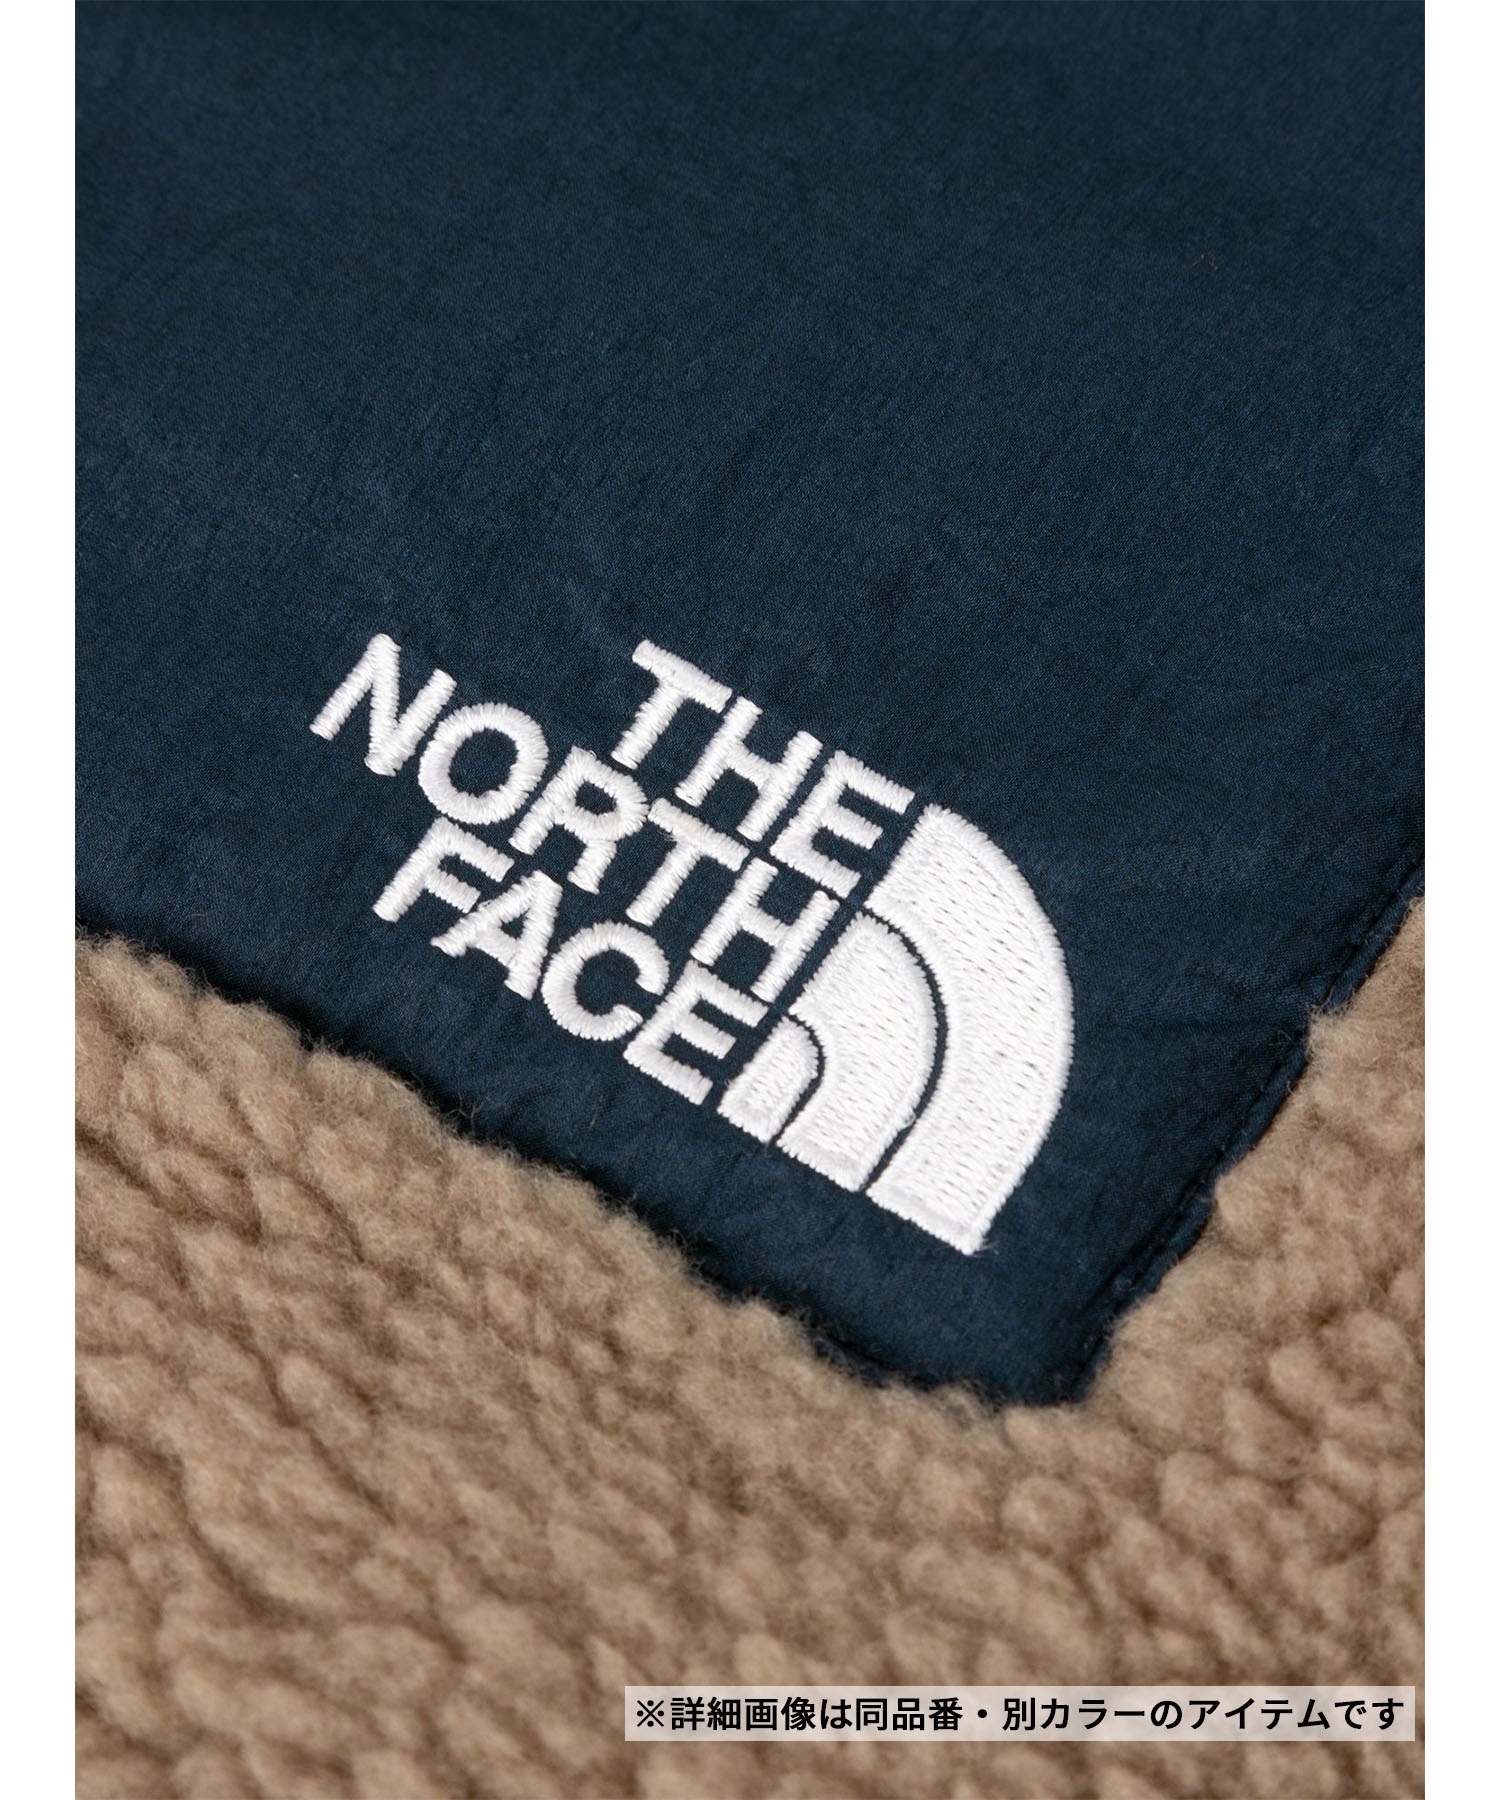 【マトメガイ対象】THE NORTH FACE/ザ・ノース・フェイス Reversible Extreme Pile Jacket リバーシブルジャケット NP72333(MK-XS)